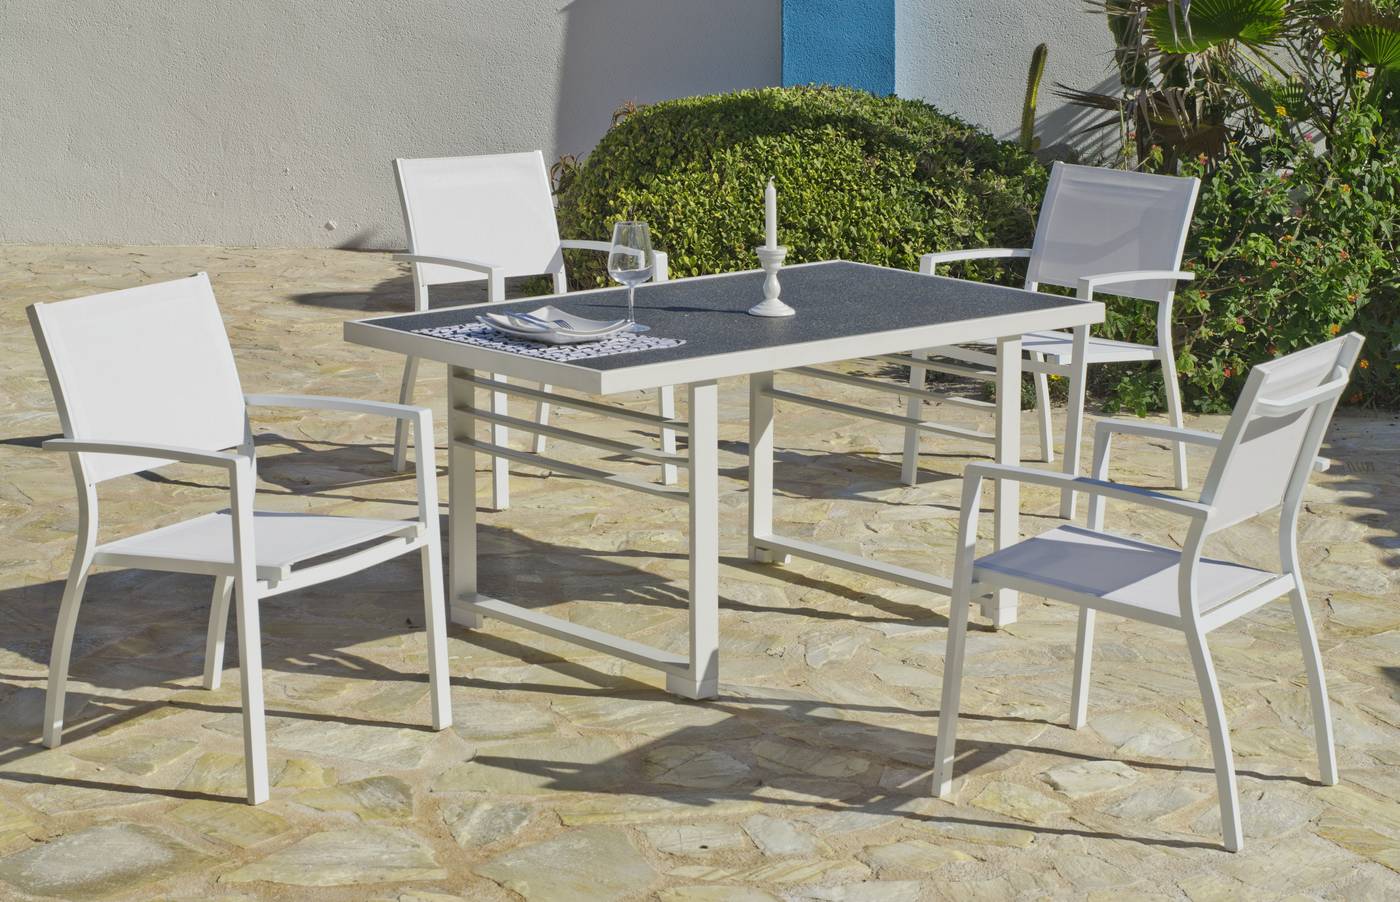 Sillón Aluminio Elva - Sillón de jardín apilable, de aluminio color blanco, Textilen en asiento y respaldo blanco